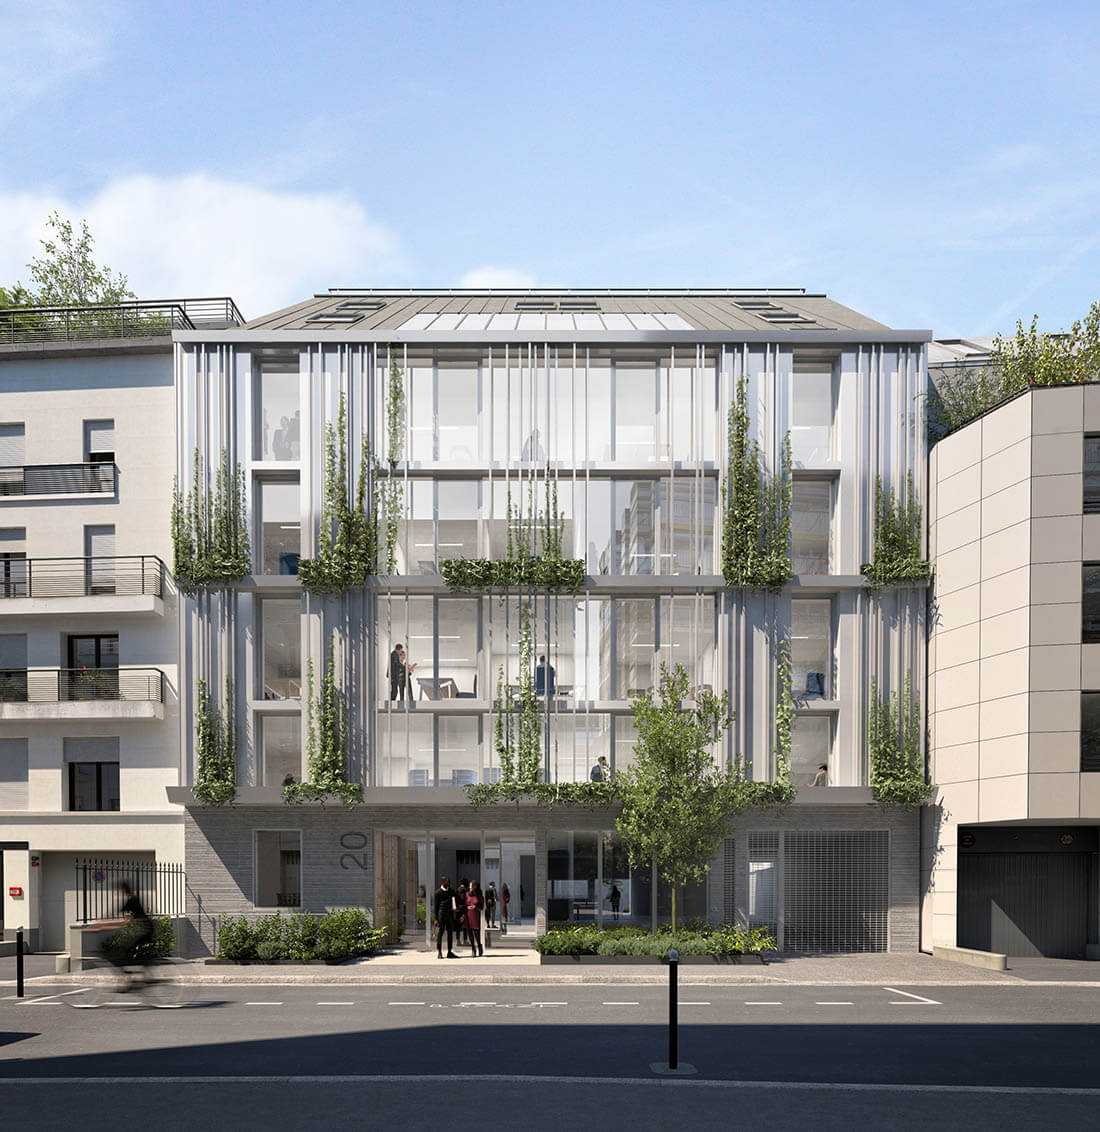 Boulogne-Billancourt_Maud-Caubet-Architectes_01